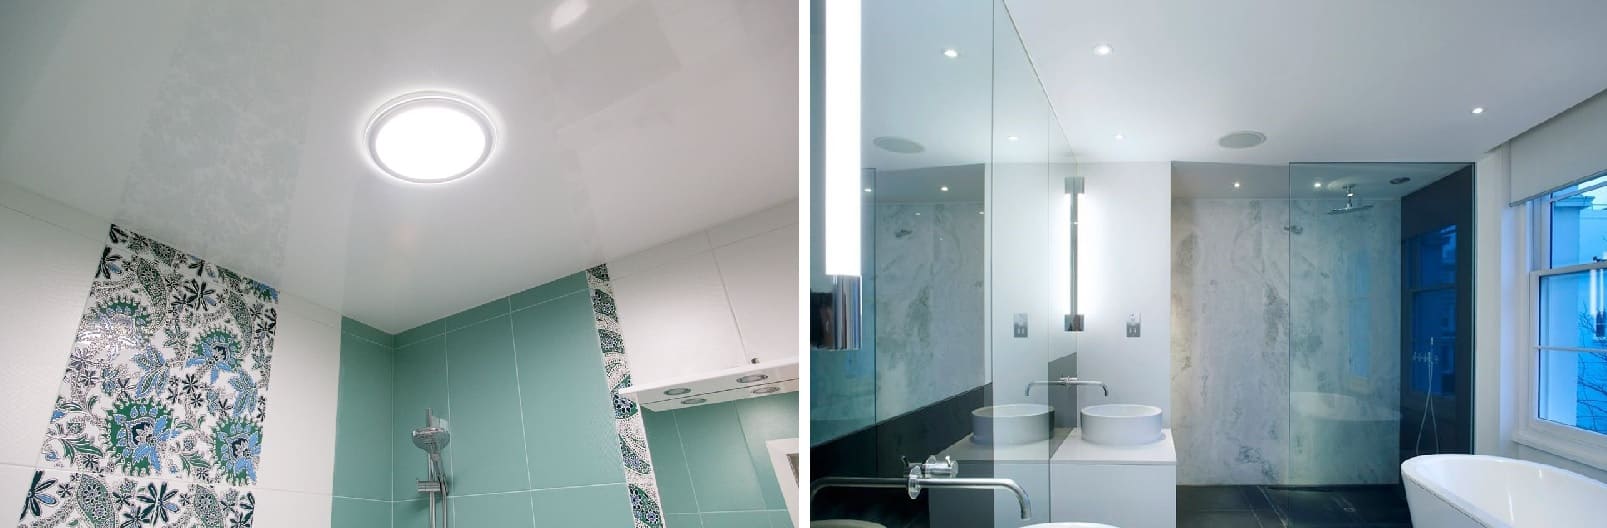 Натяжные потолки в ванную: фото, цены, особенности установки и эксплуатации - компания Alezi